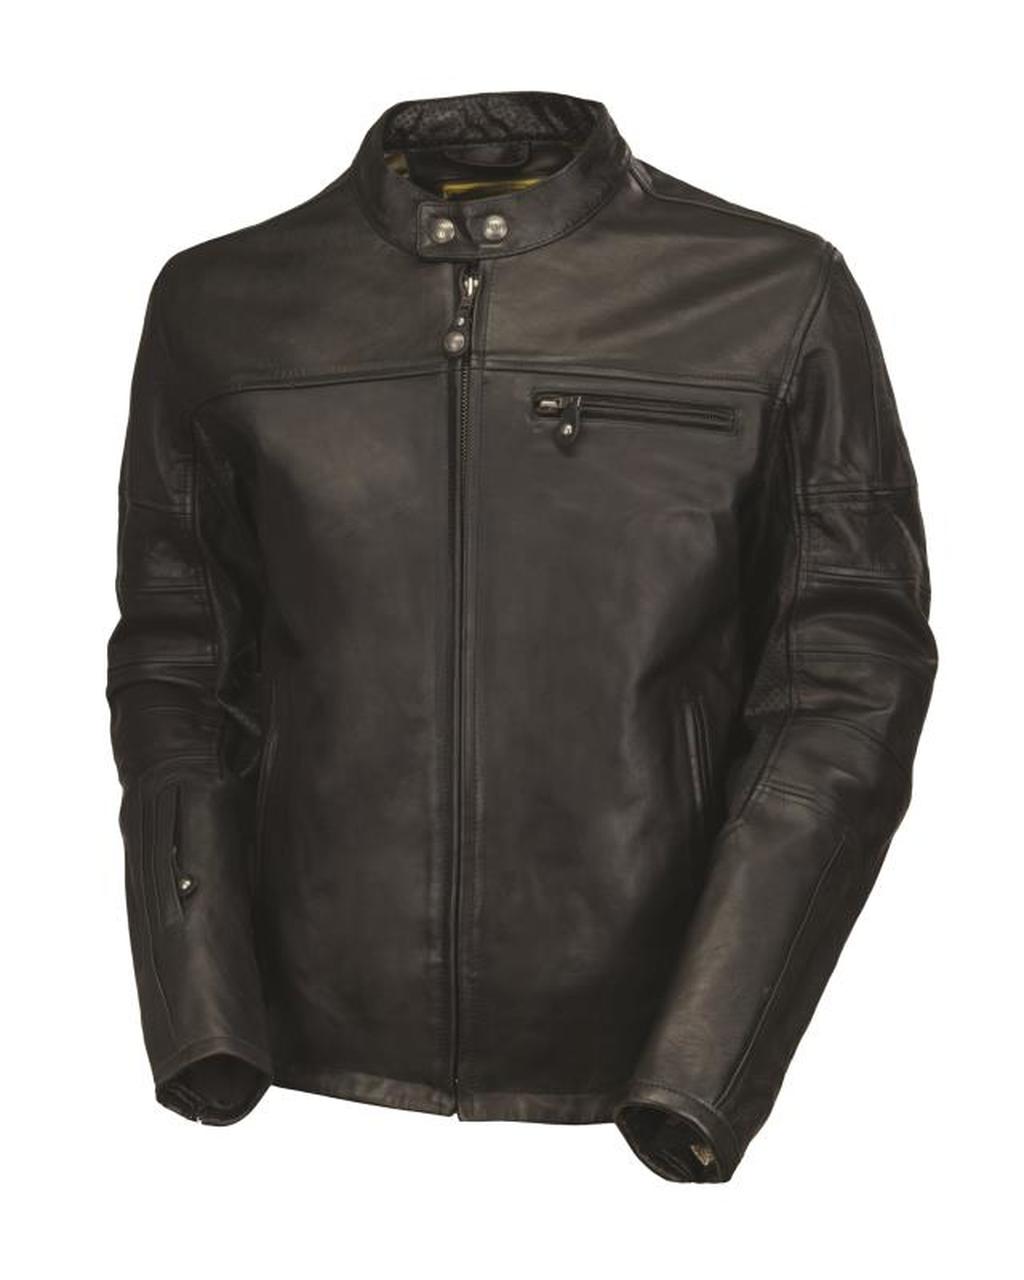 Ronin CE motorcycle leather jacket black